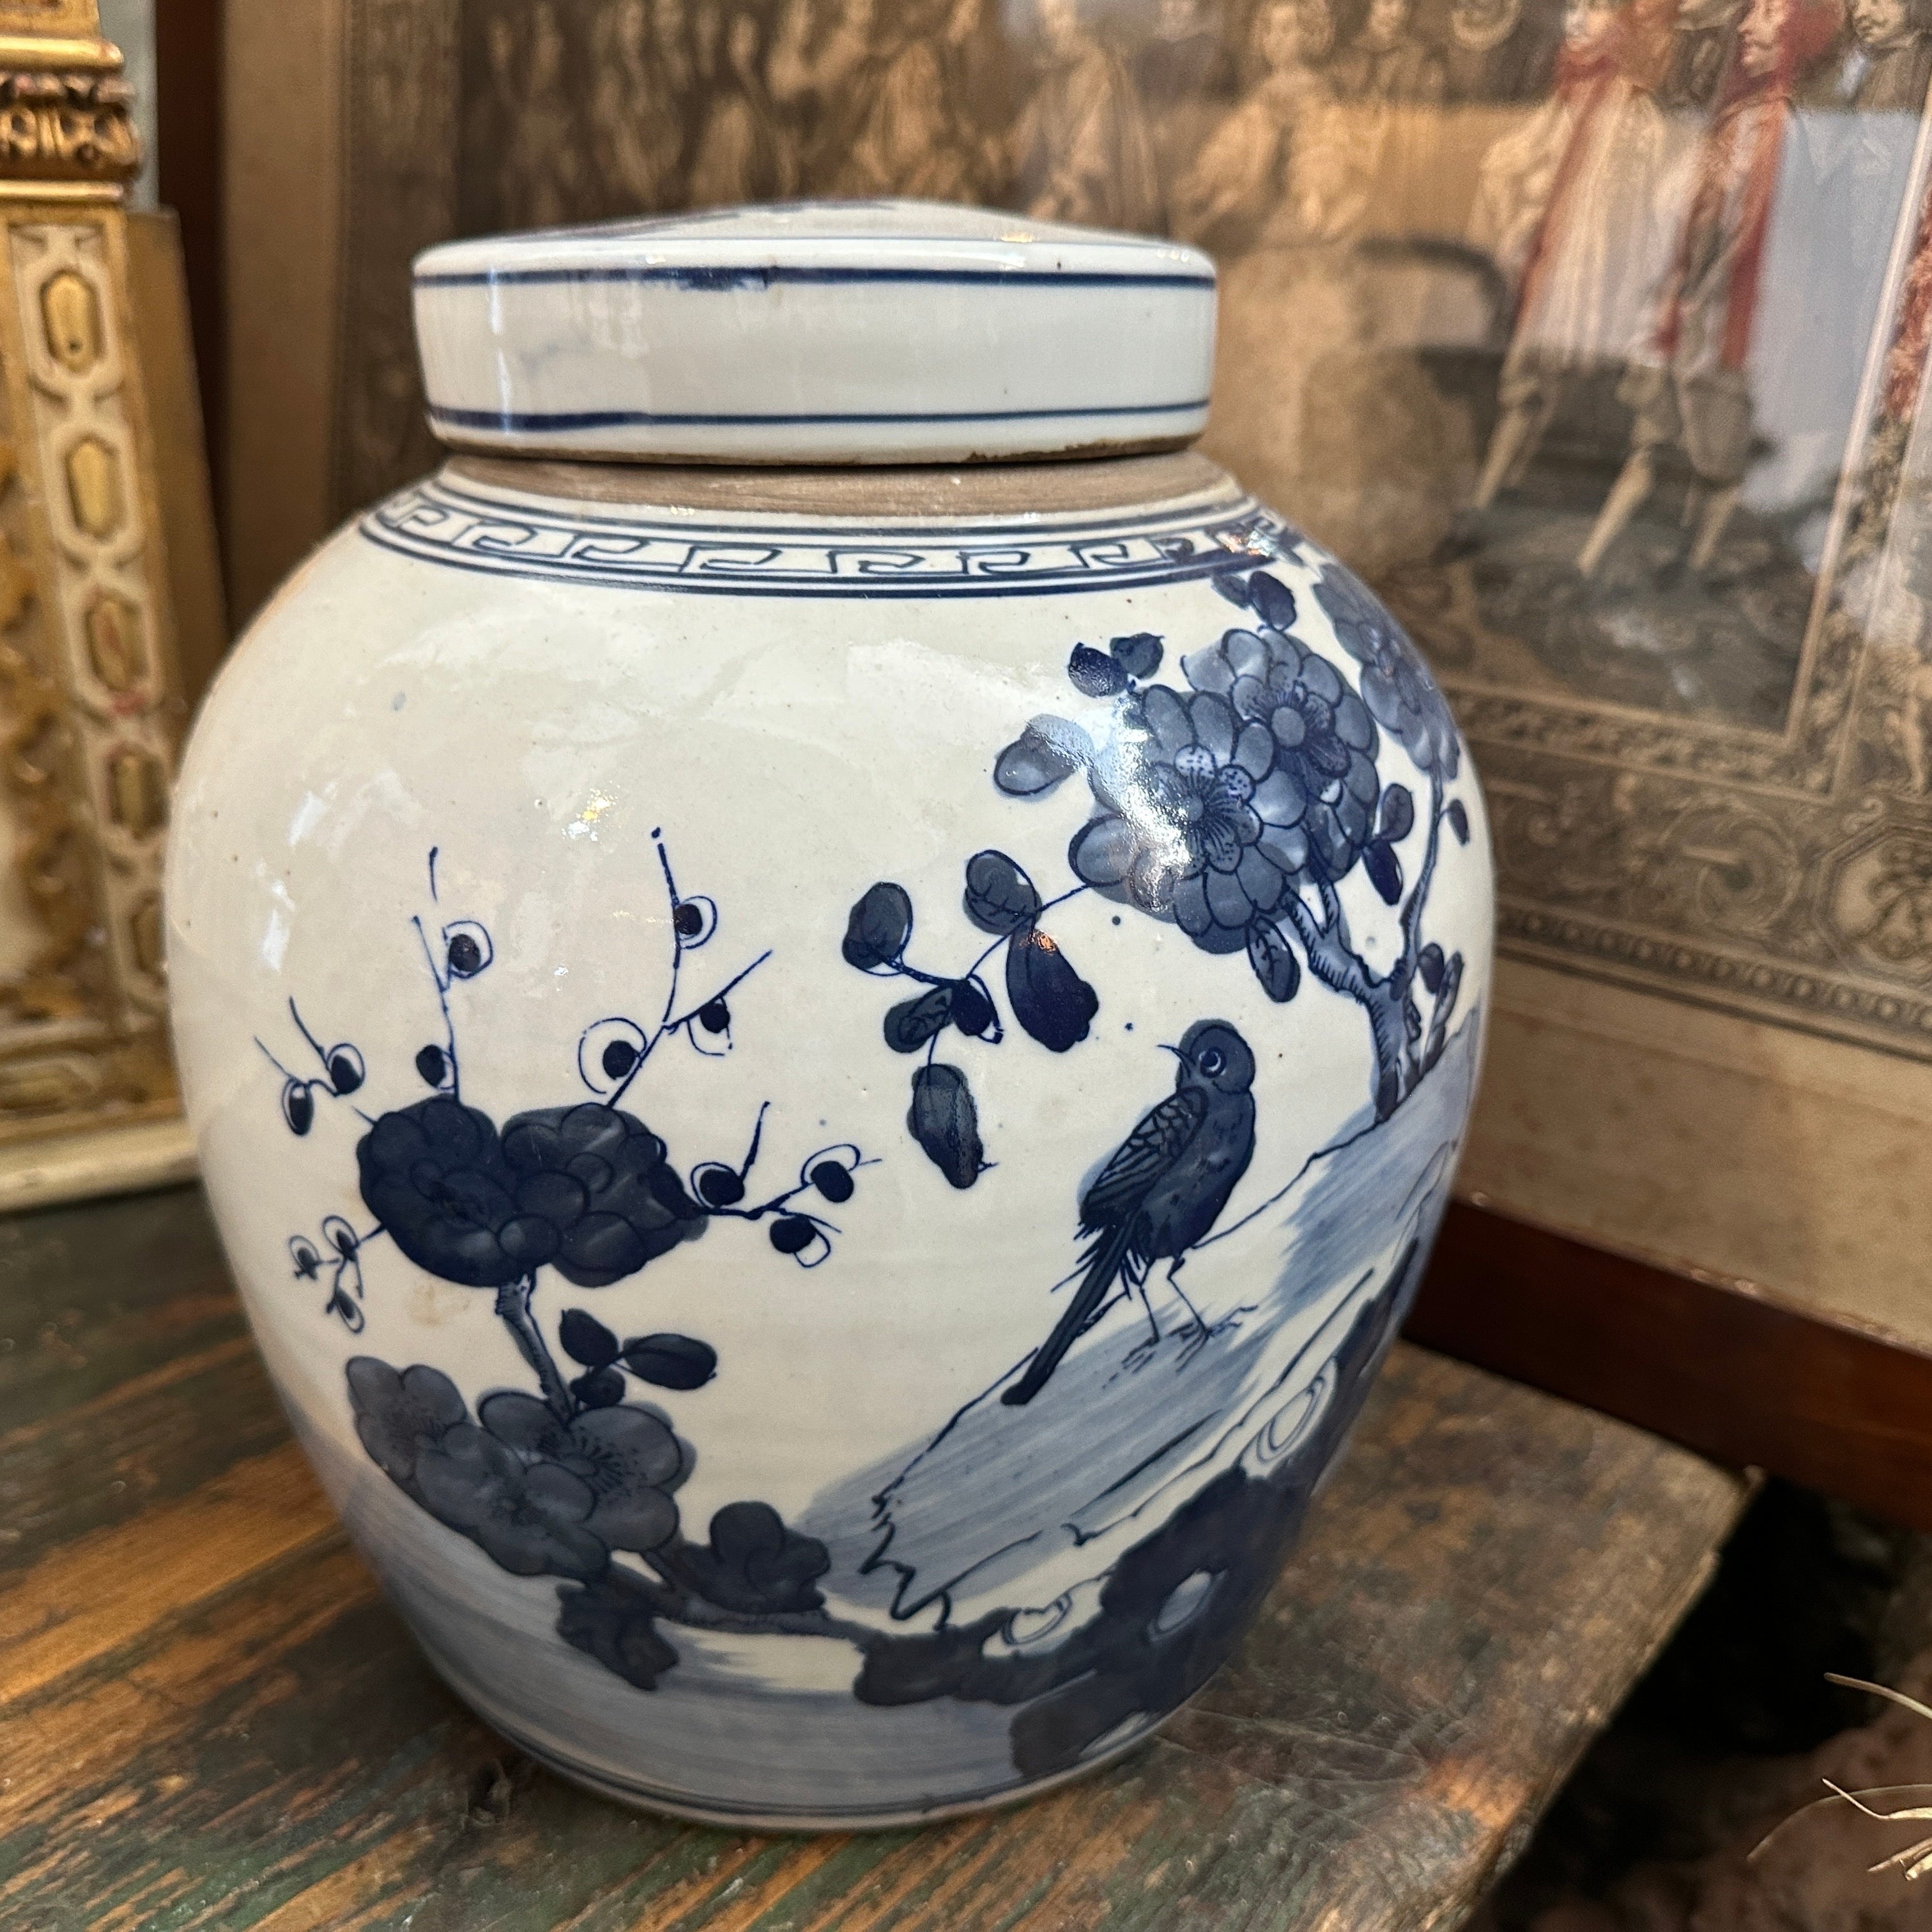 Una coppia di barattoli di zenzero in ceramica bianca e blu realizzati e dipinti a mano in Cina nella seconda parte del XX secolo. Sono in condizioni originali e presentano i normali segni dell'età. Le ceramiche blu e bianche hanno una lunga storia